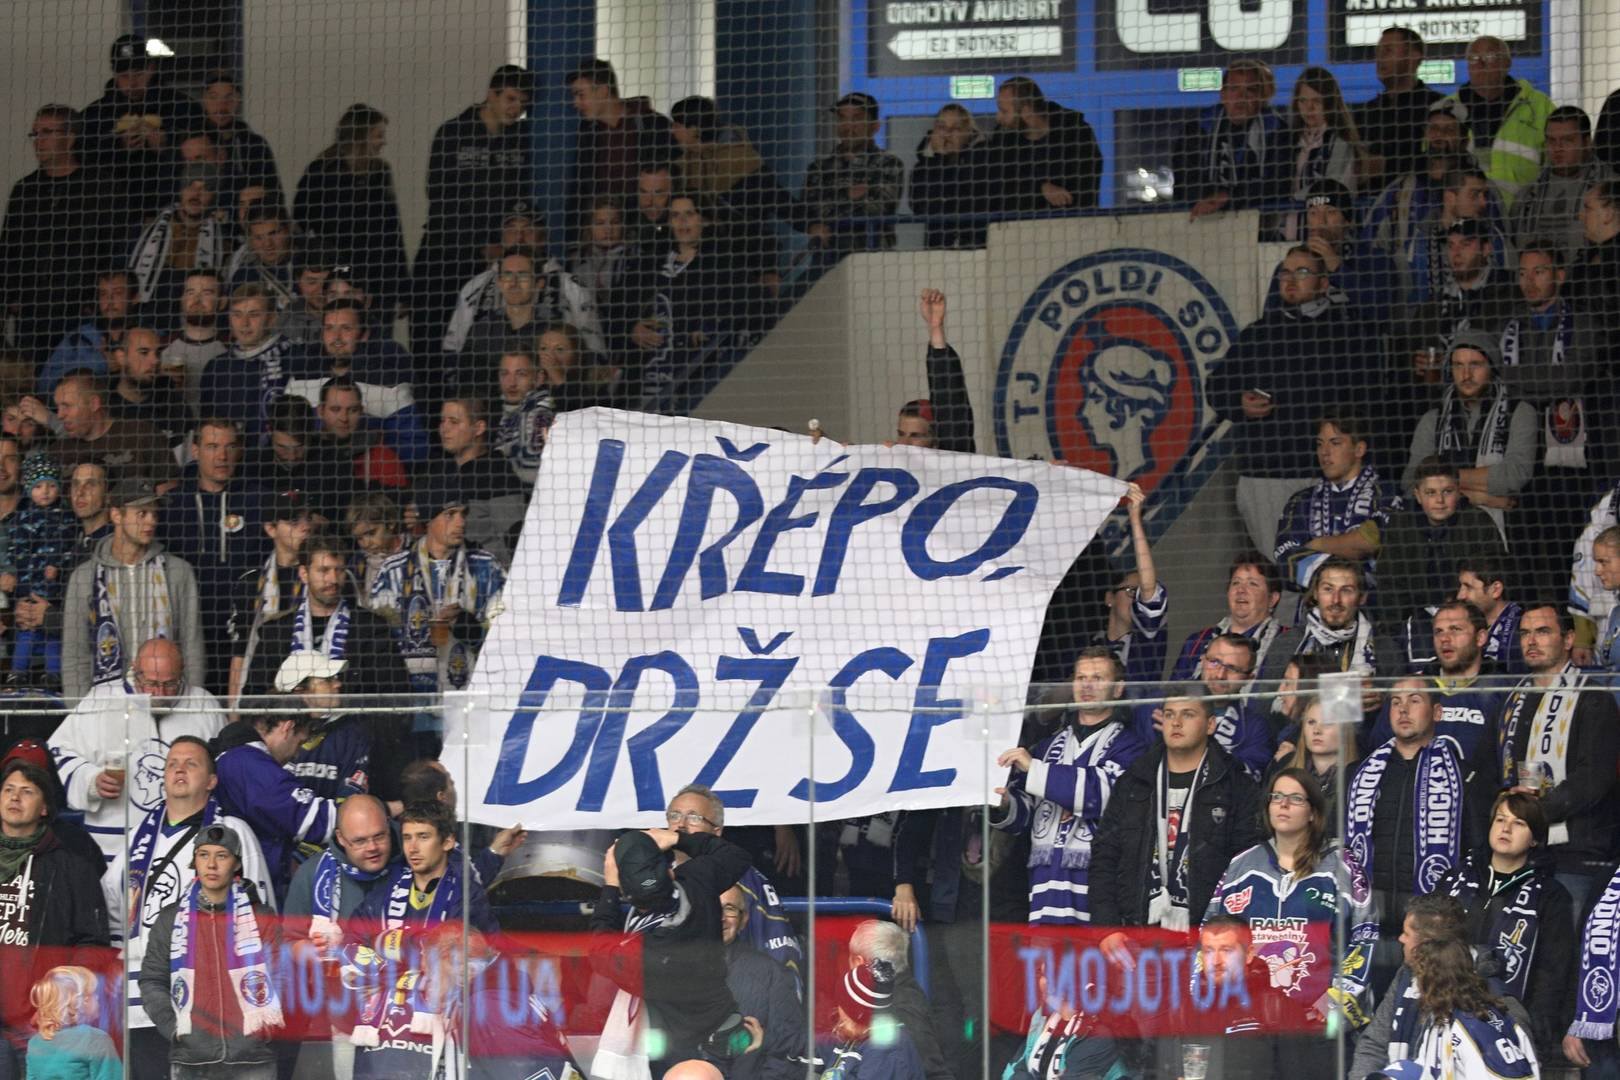 Kladenští fanoušci vyjádřili podporu bývalému kladenskému hráči Petru Křepelkovi, který se při zápase v Německu vážně zranil.